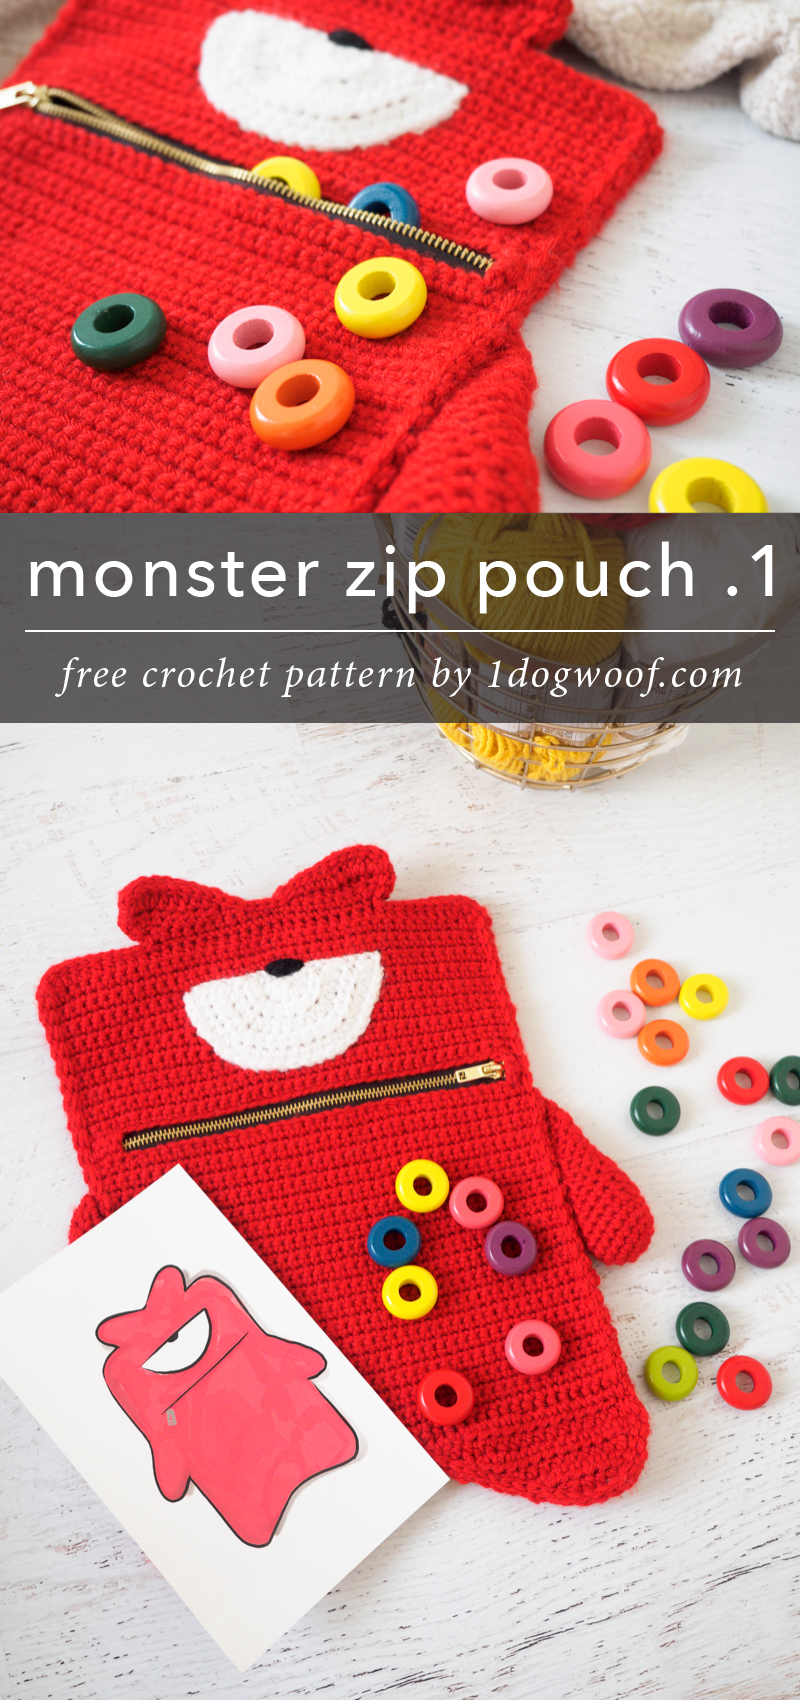 开尔文的红色怪物拉链袋作为一个有趣的礼物给孩子们!